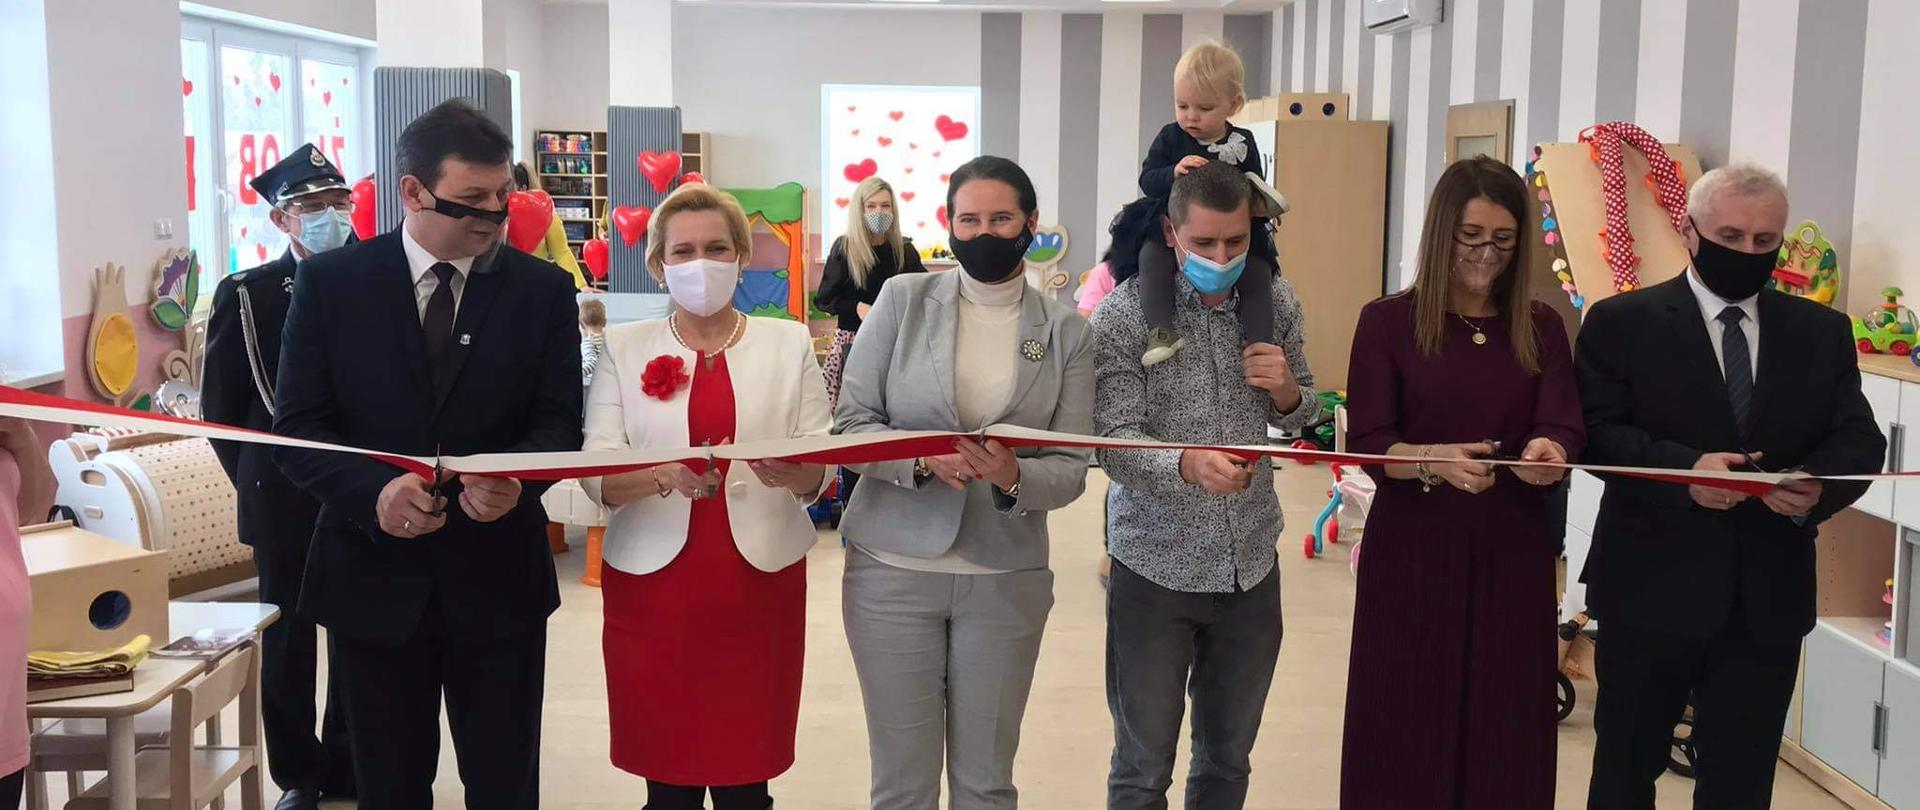 Uroczyste otwarcie żłobka w Gorzowie Śląskim. Na zdjęciu sześć osób, przecinające biało-czerwoną wstęgę na znak otwarcia obiektu. W tle sala żłobka. 